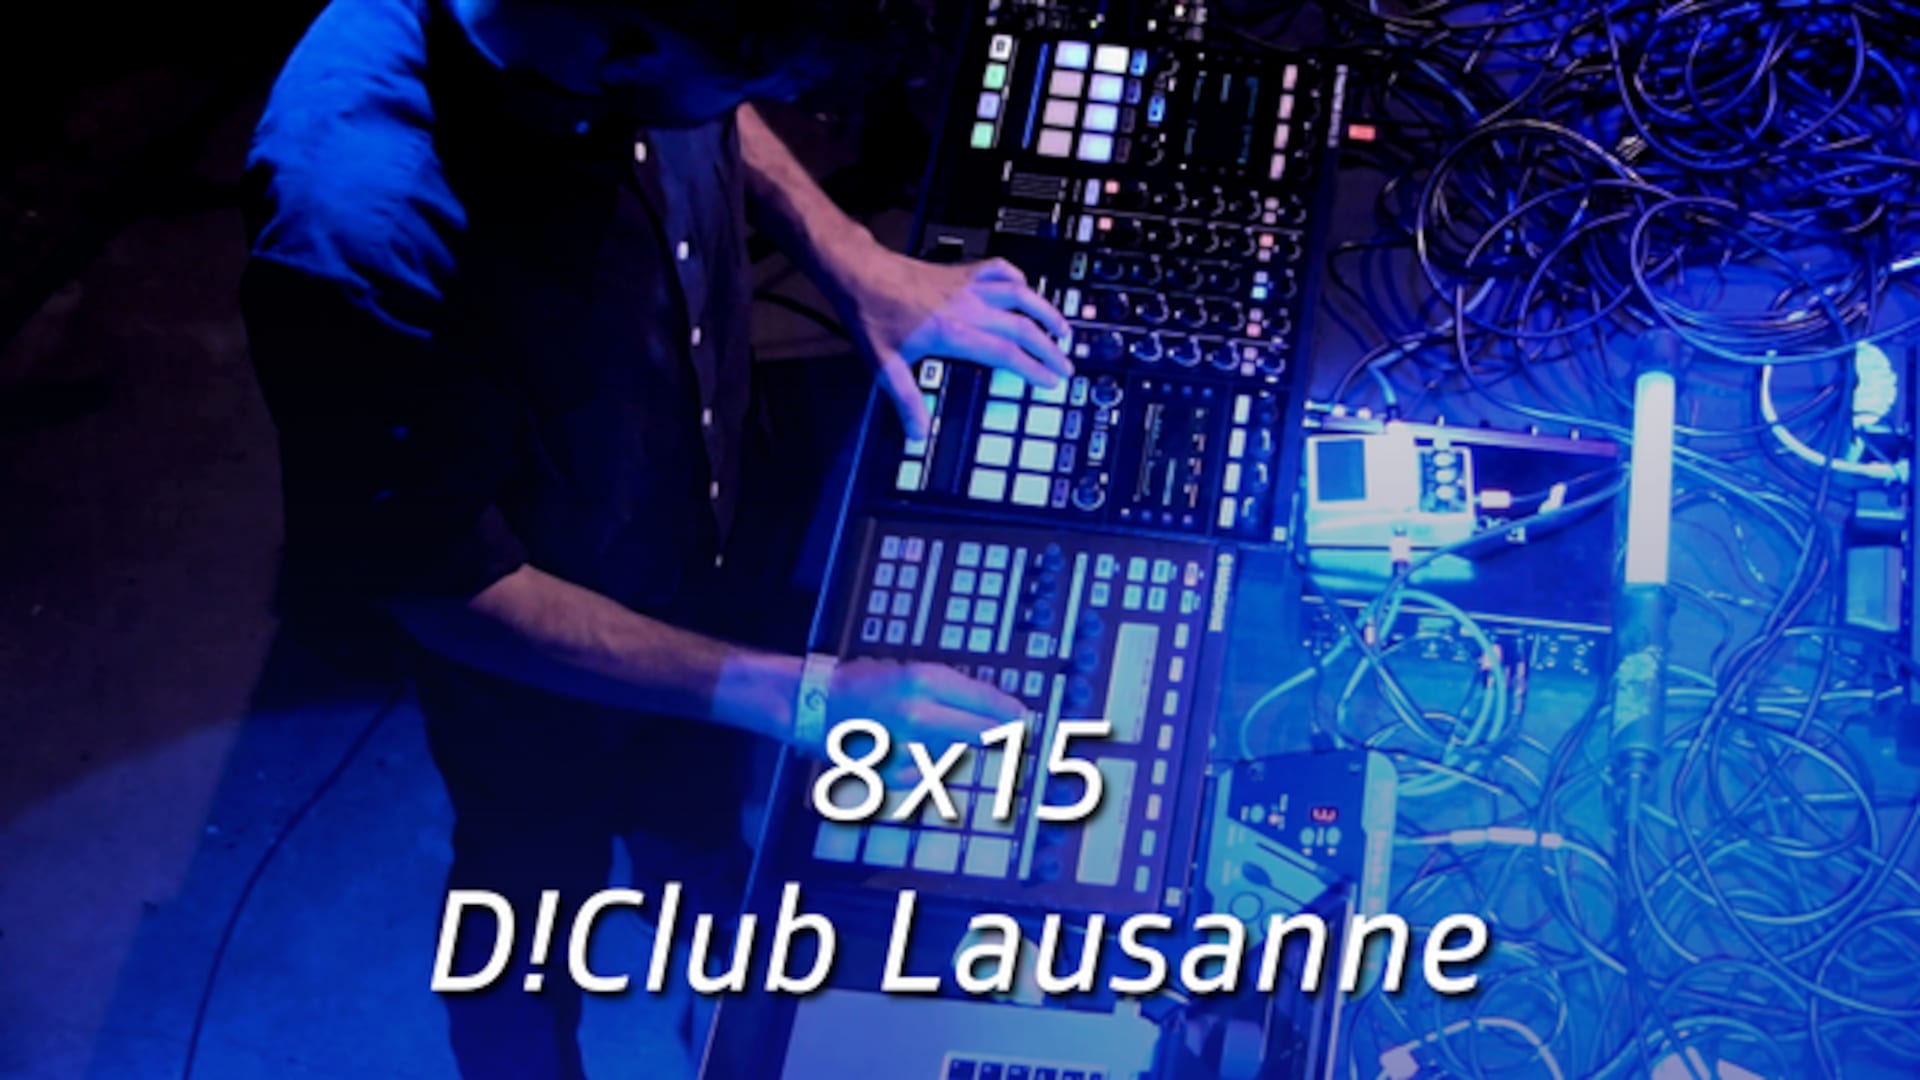 8x15 - D!Club Lausanne